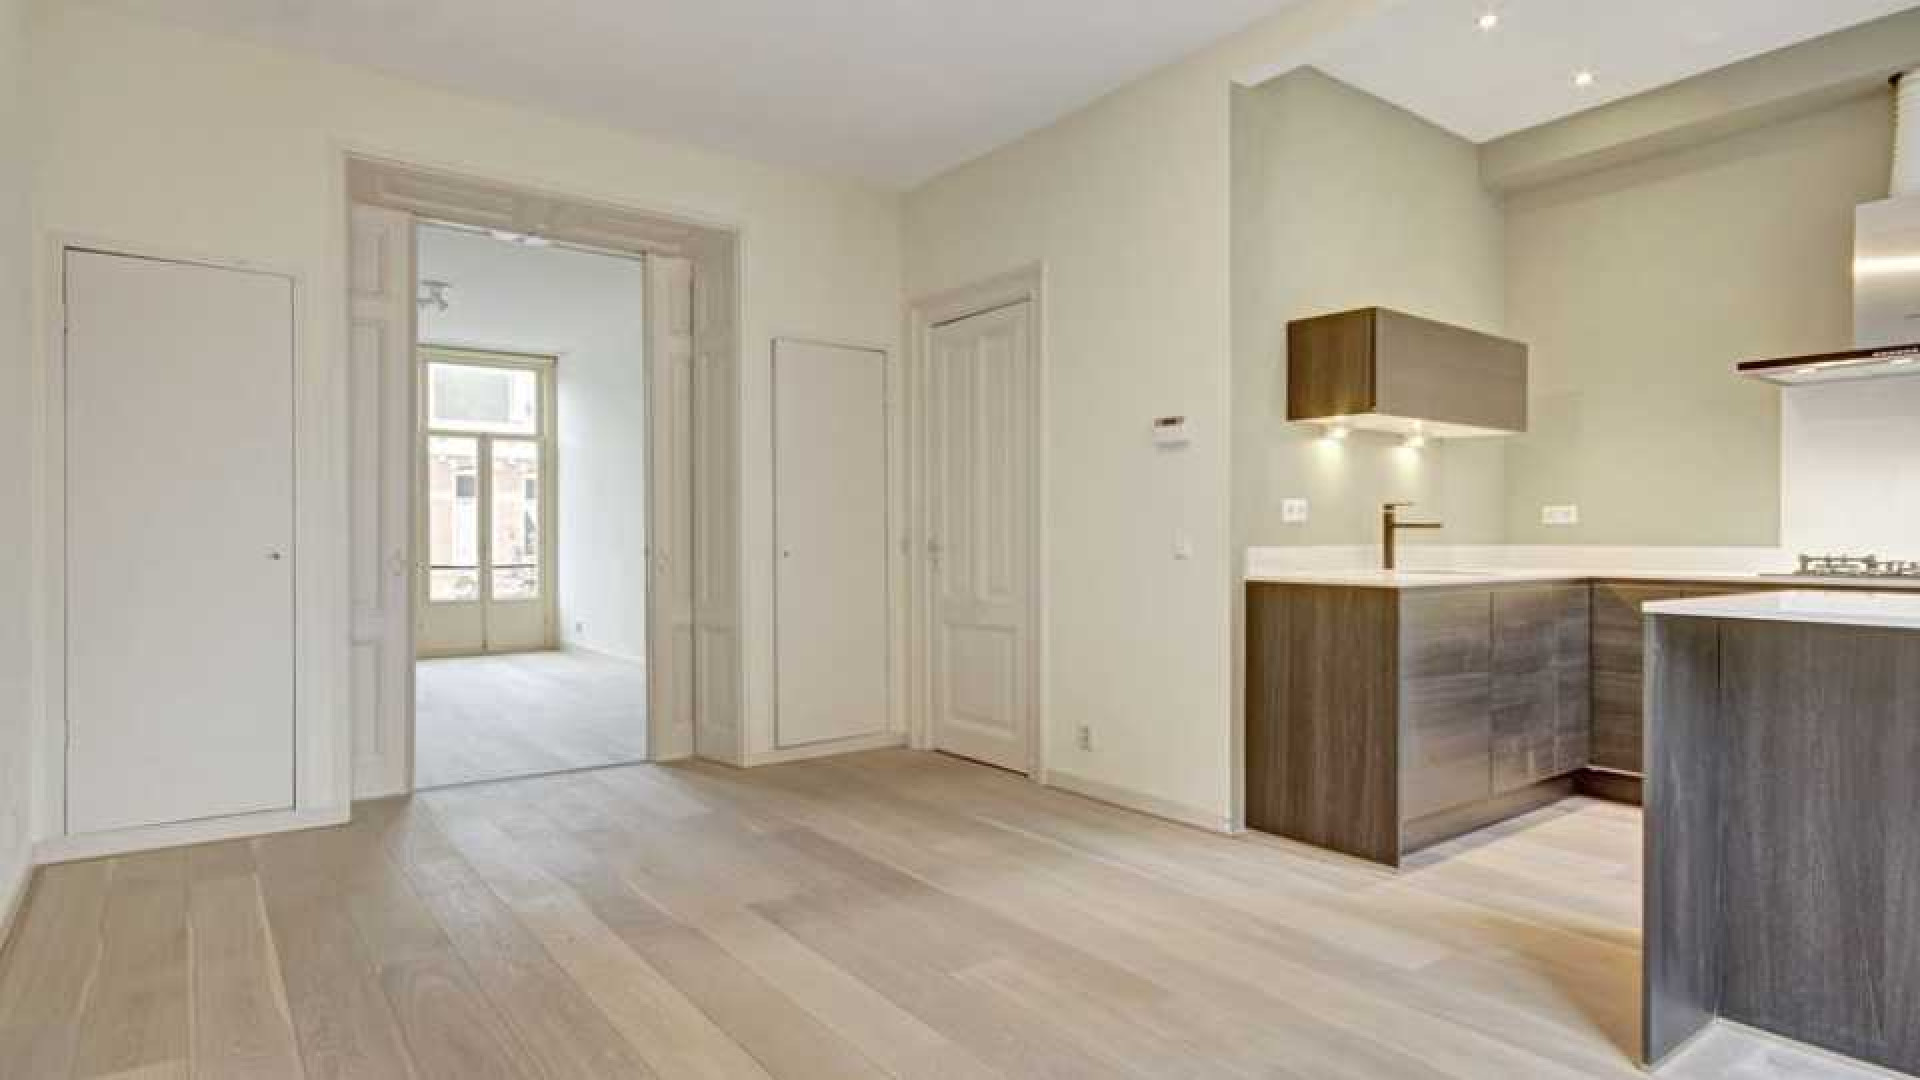 Daphne Deckers en Richard Krajicek zetten hun appartement te huur. Zie foto's